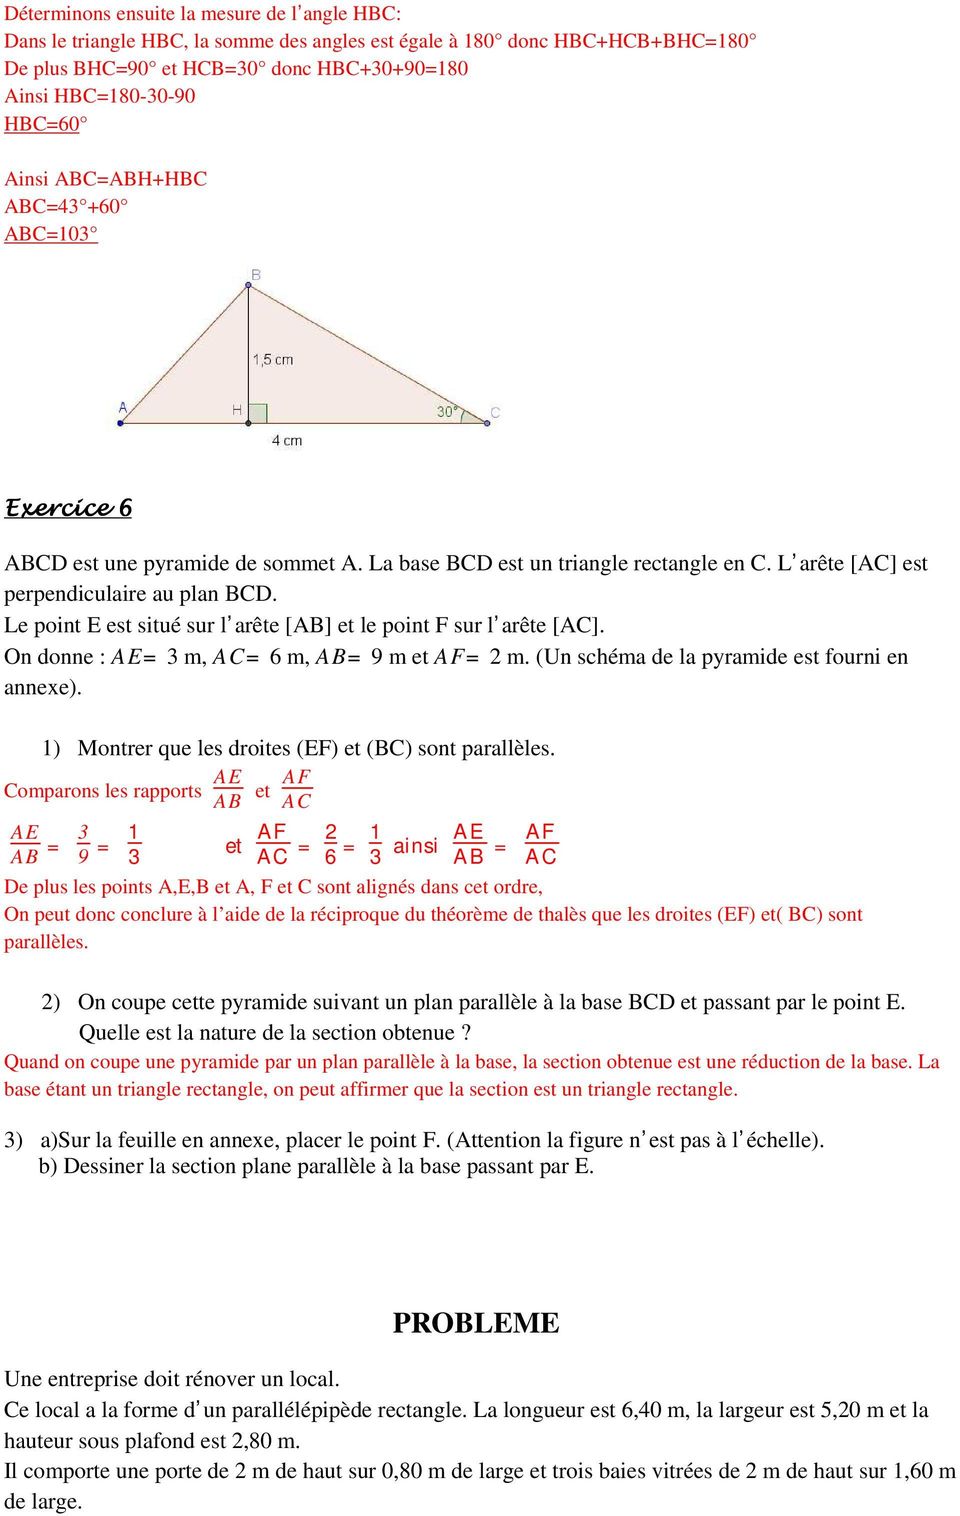 Le point E est situé sur l arête [AB] et le point F sur l arête [AC]. On donne : AE=3 m, AC=6 m, AB=9 m et AF=2 m. (Un schéma de la pyramide est fourni en annexe).